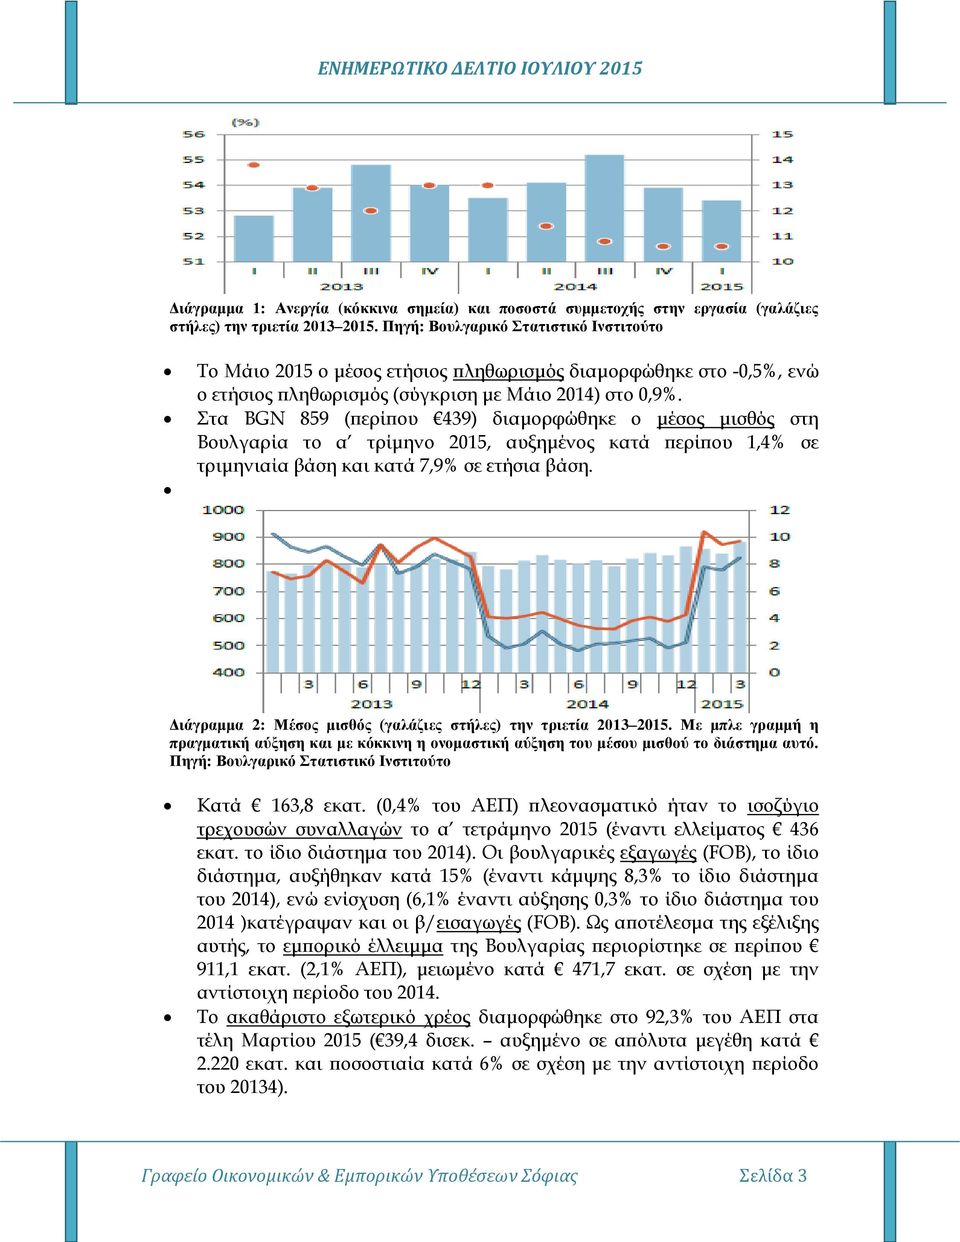 Στα BGN 859 (περίπου 439) διαμορφώθηκε ο μέσος μισθός στη Βουλγαρία το α τρίμηνο 2015, αυξημένος κατά περίπου 1,4% σε τριμηνιαία βάση και κατά 7,9% σε ετήσια βάση.